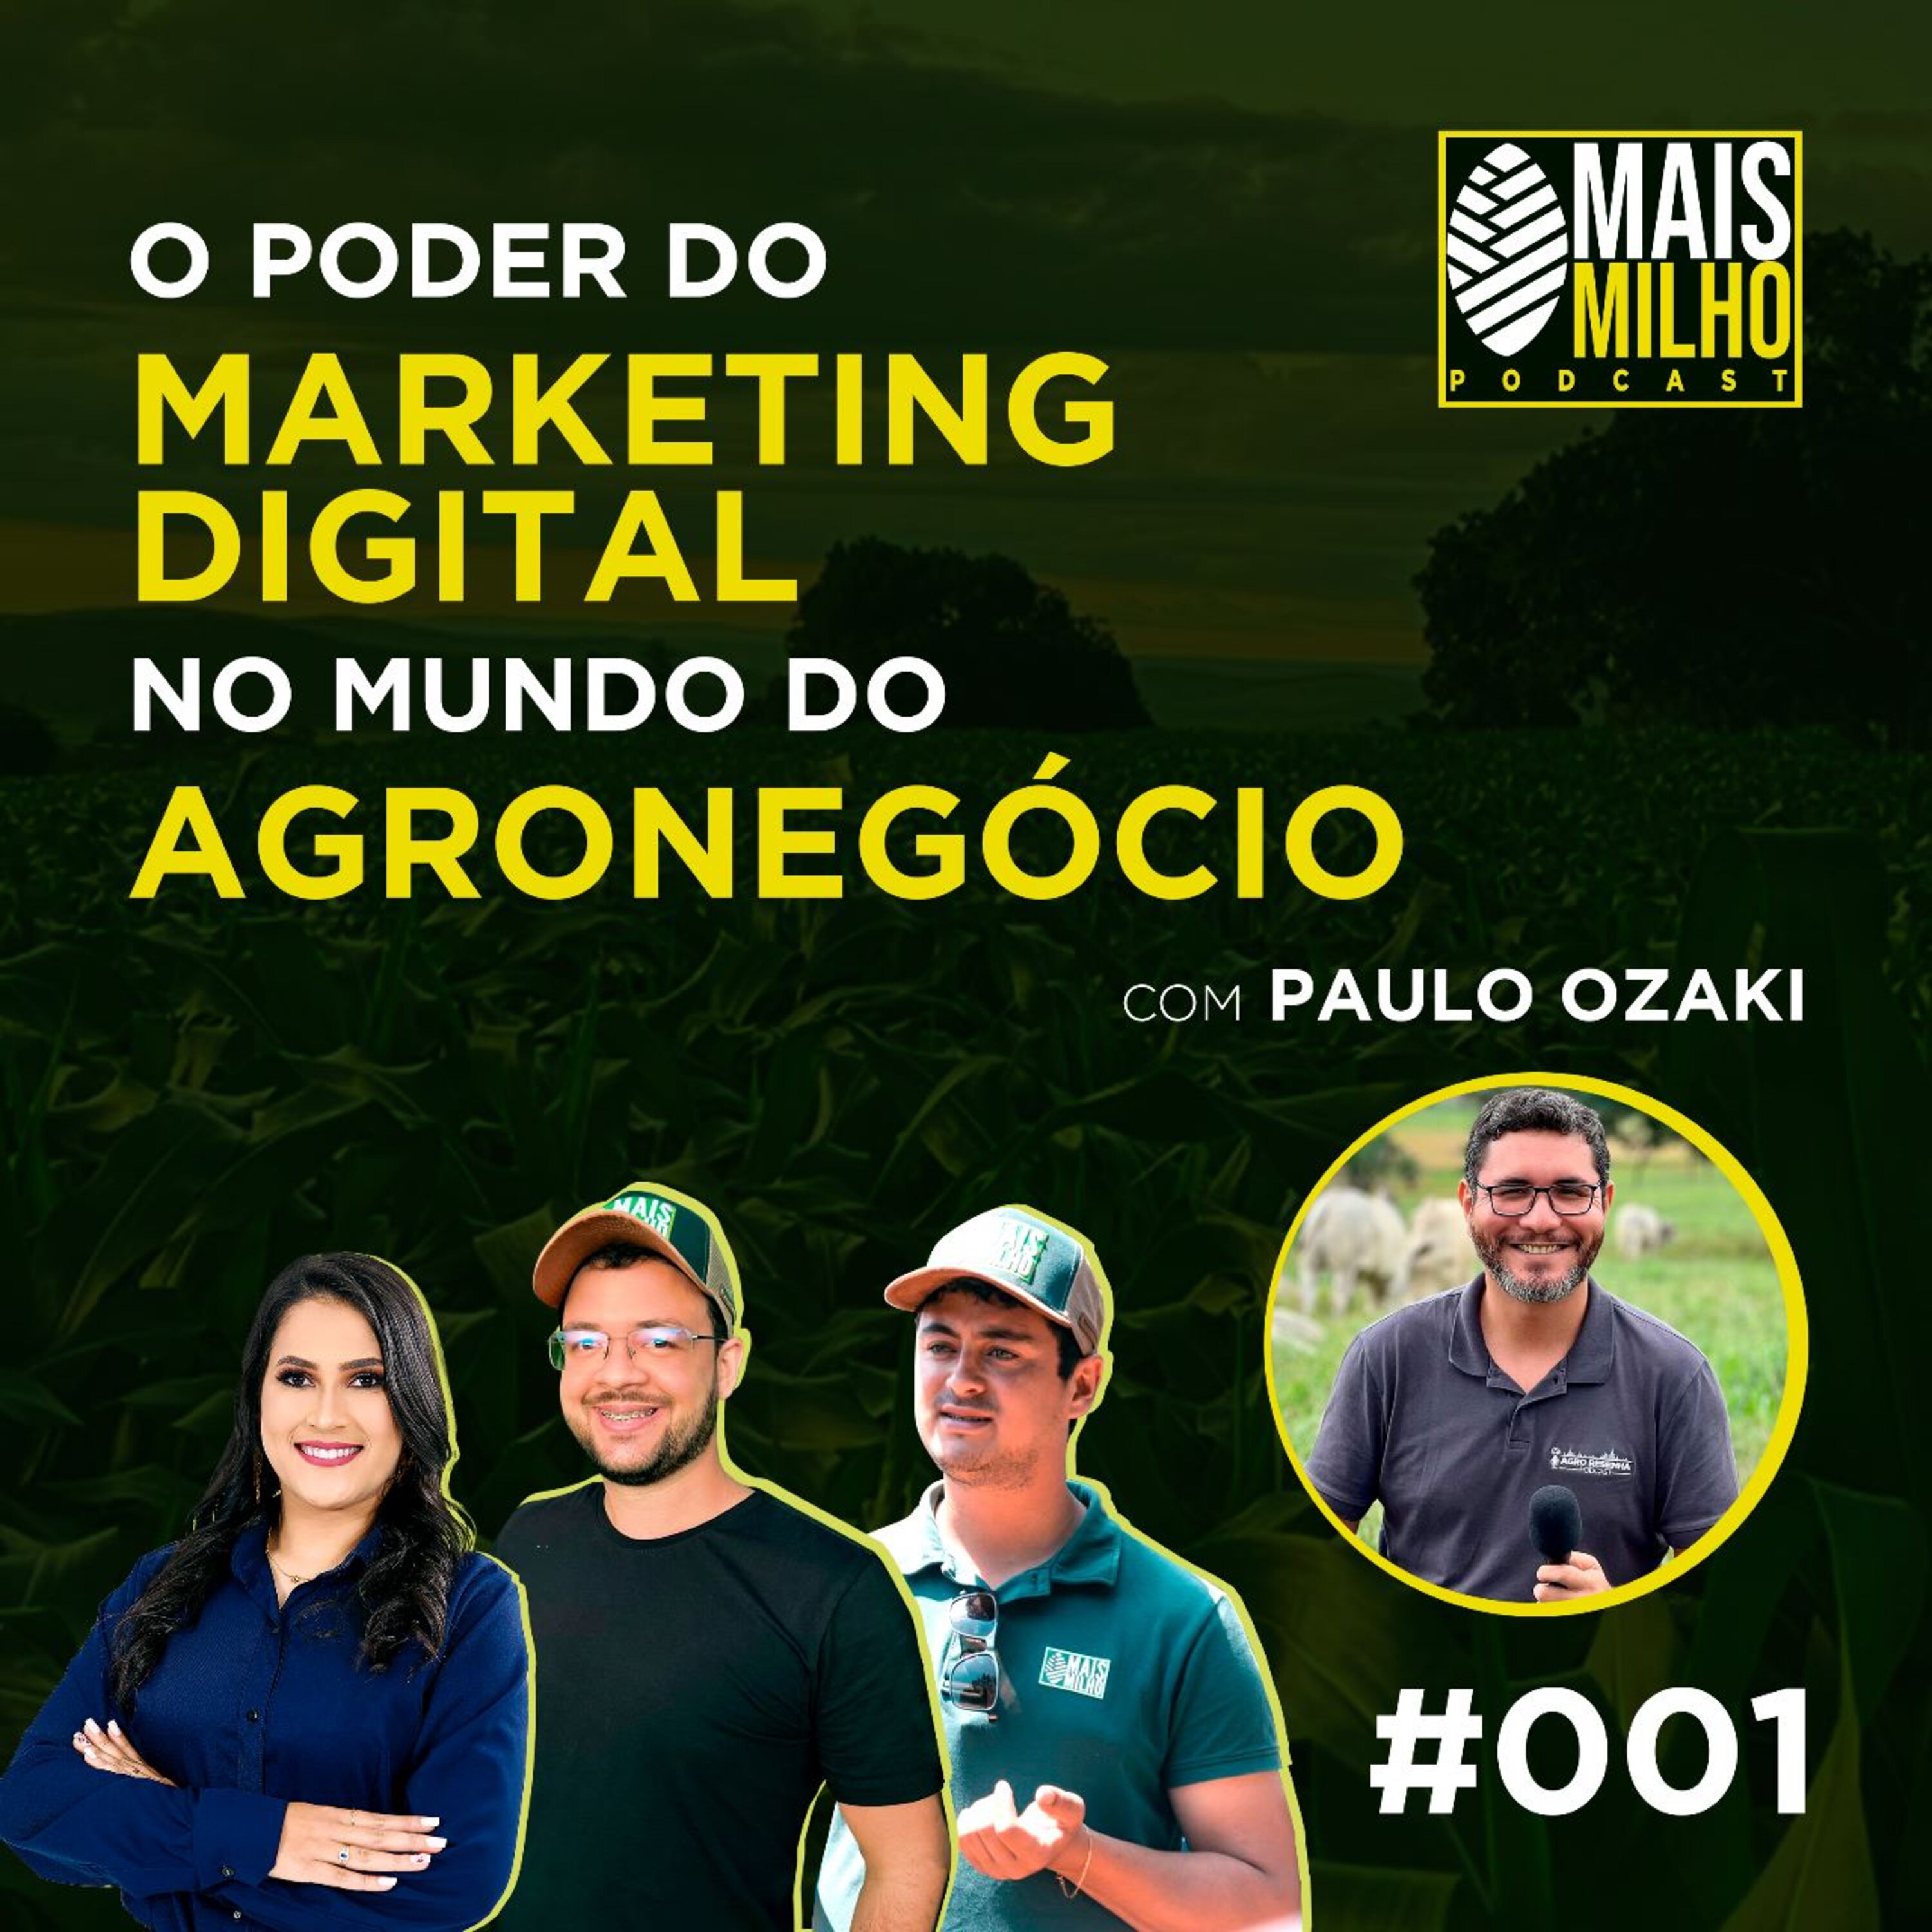 #001 - PAULO OZAKI: O PODER DO MARKETING DIGITAL NO MUNDO DO AGRONEGÓCIO